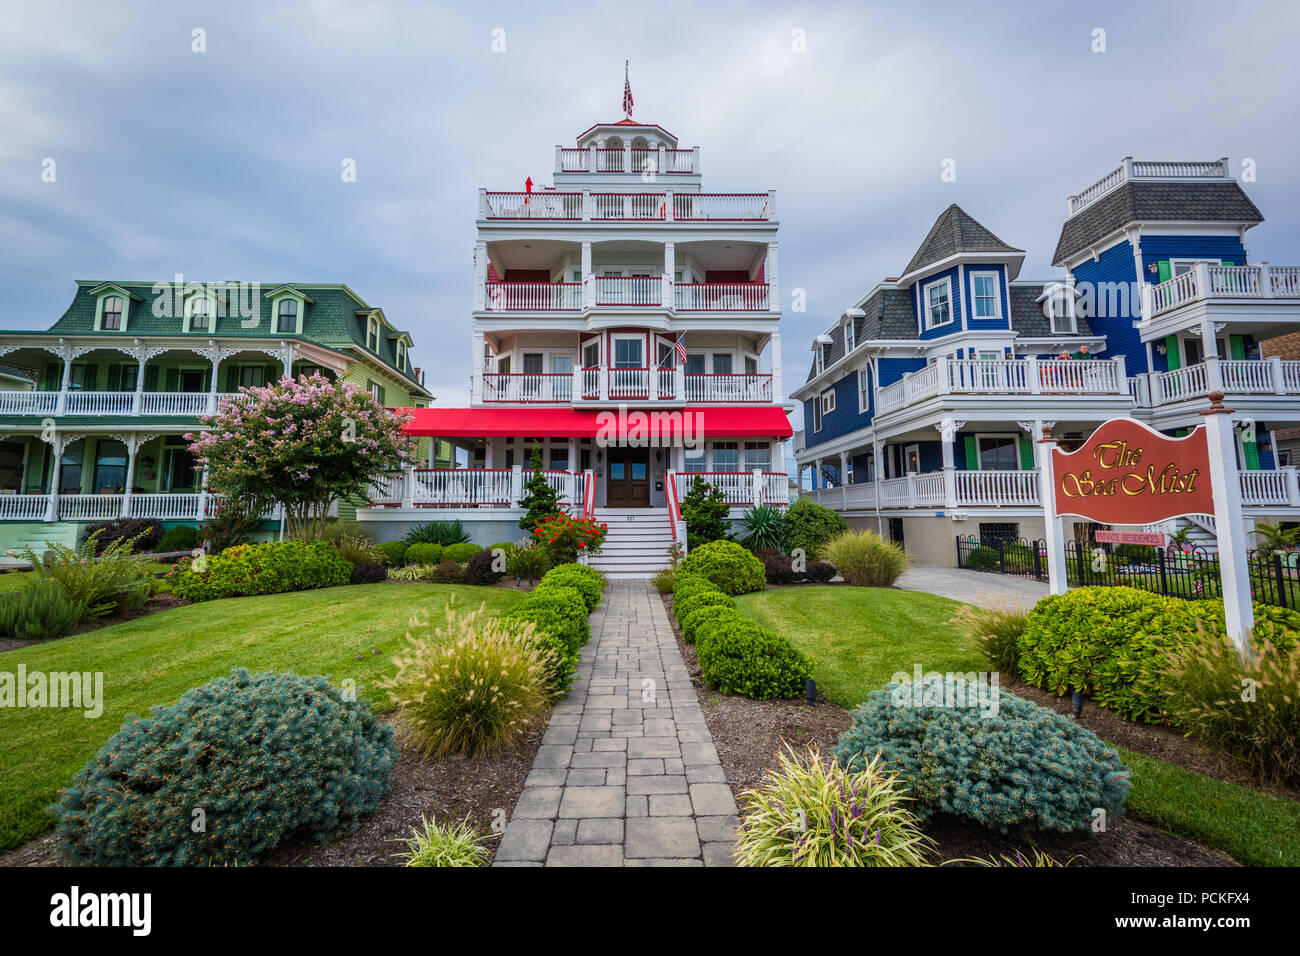 Maisons au bord de l'Avenue de la plage à Cape May, New Jersey. Banque D'Images